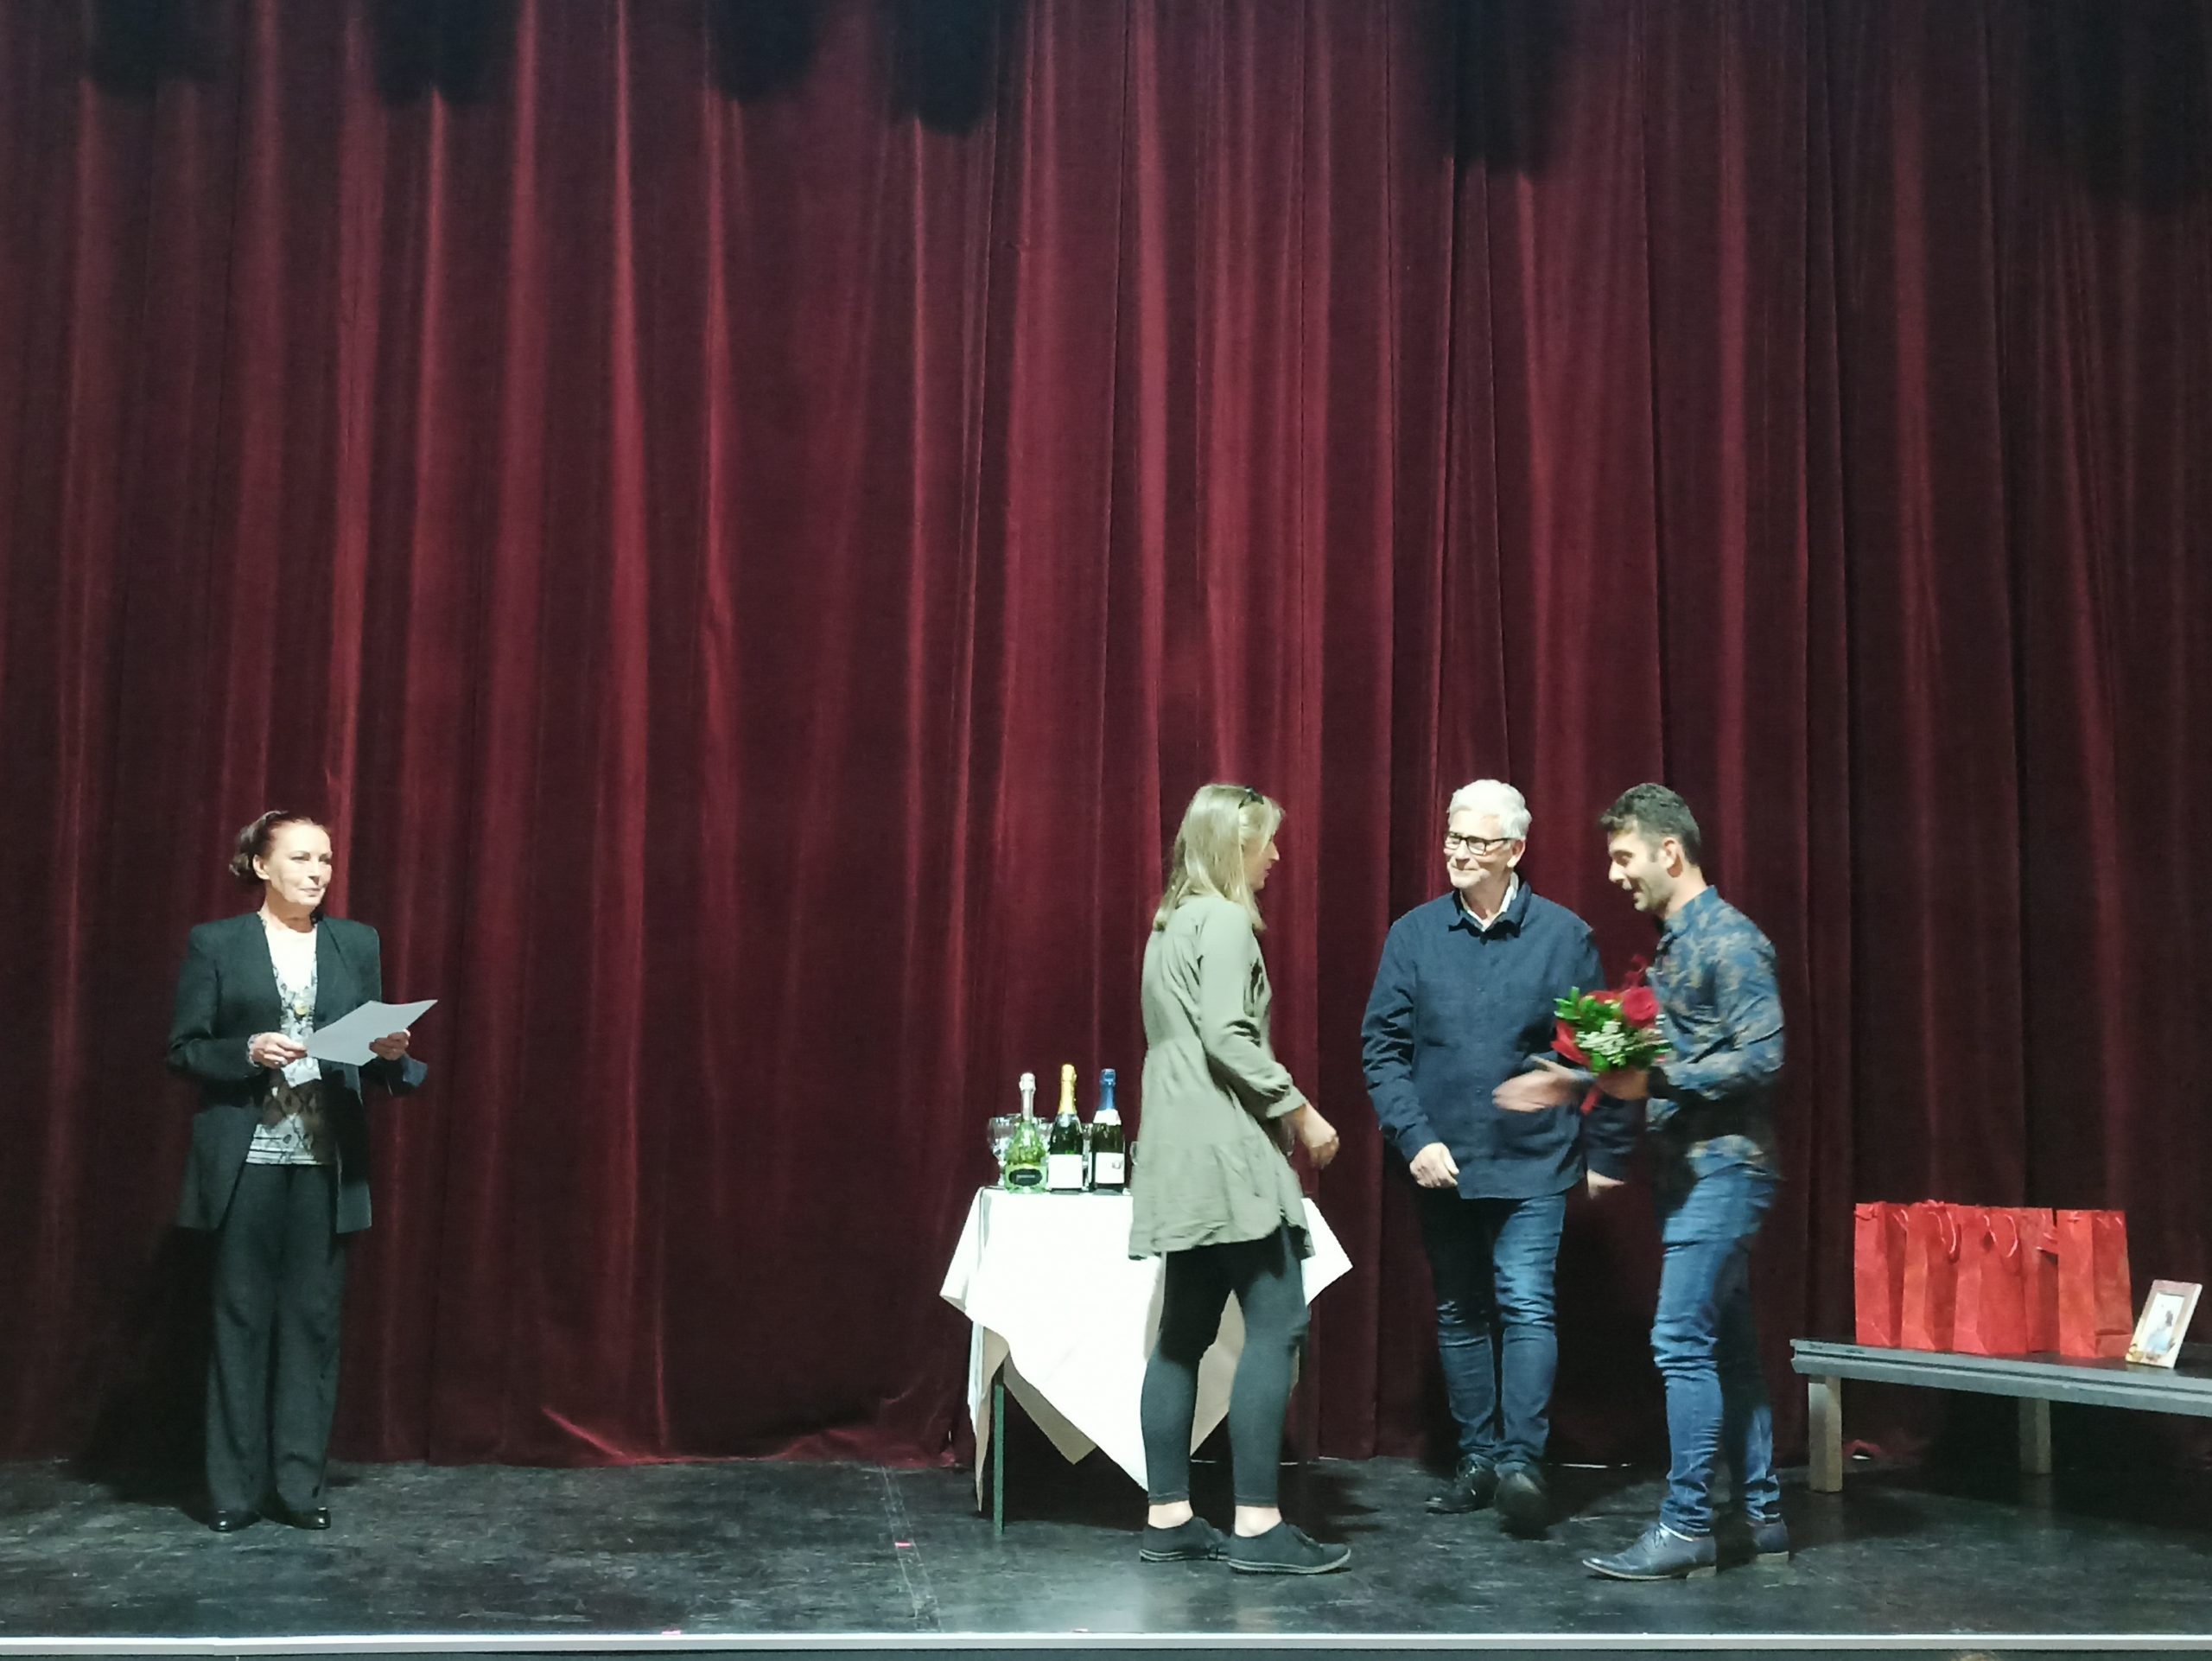 Dramsko takmičenje i dodela nagrada u Novosadskom pozorištu, Novosadsko pozorište, Dan mađarske, madjarske drame, Dramsko takmičenje vojovđanskih, vojvodjanskih mađarskih, madjarskih pisaca